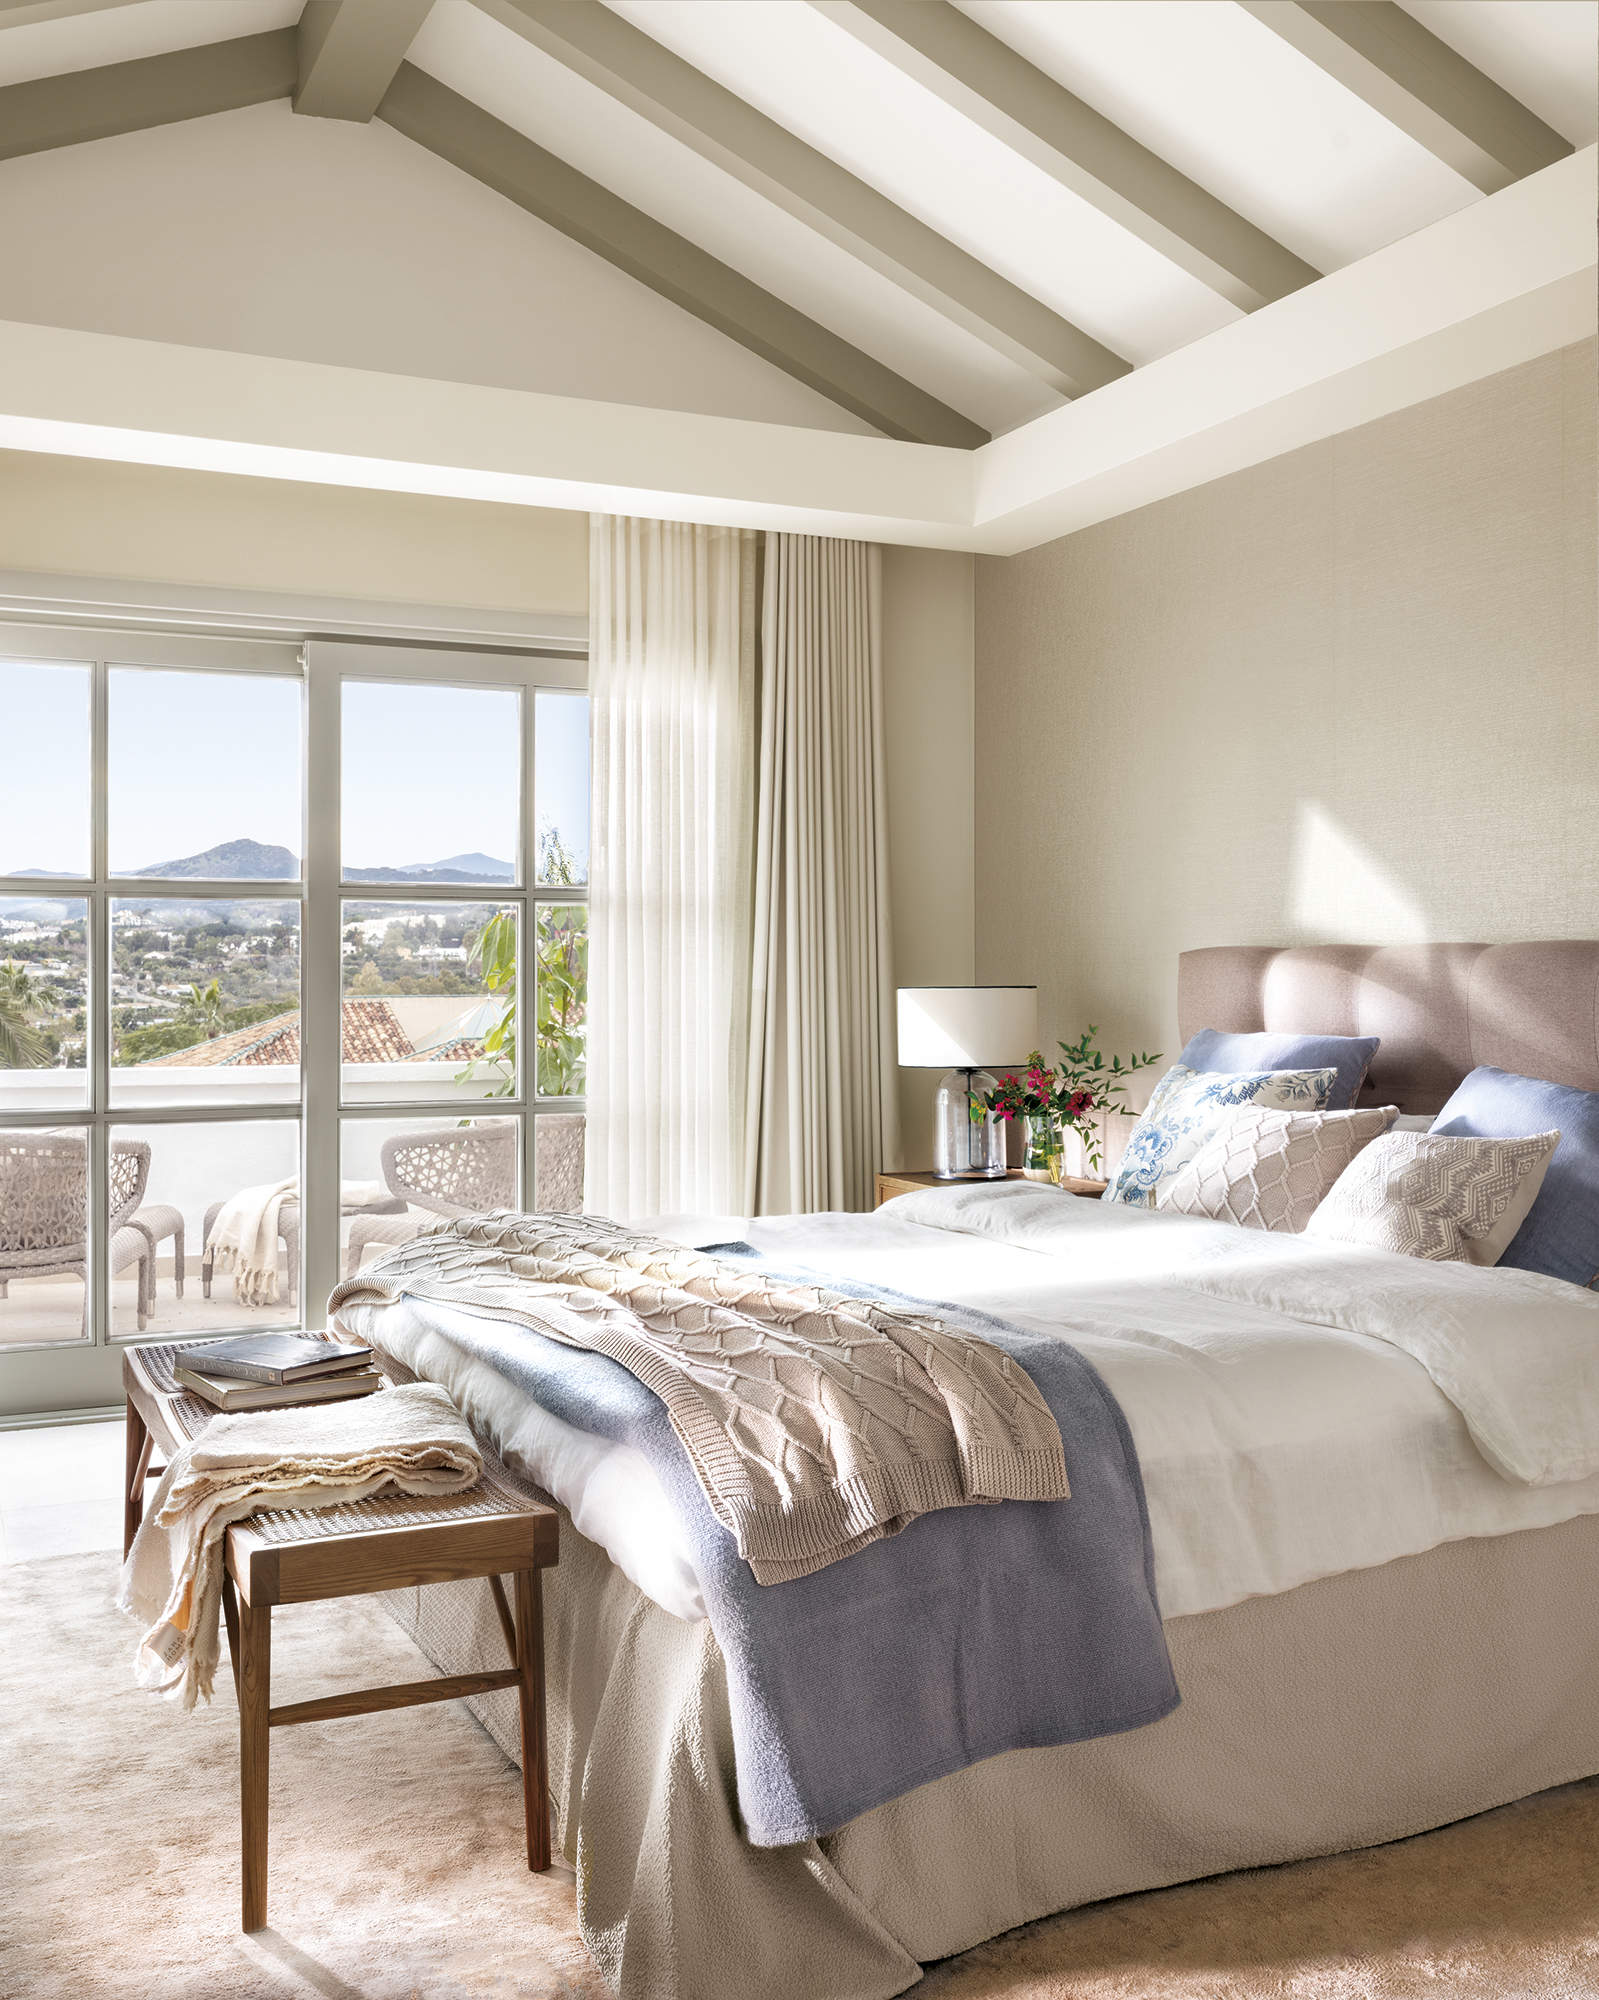 dormitorio principal con salida a terraza privada, ropa de cama beige y azul, cabecero tapizado, banqueta con rejilla, alfombra beige, 